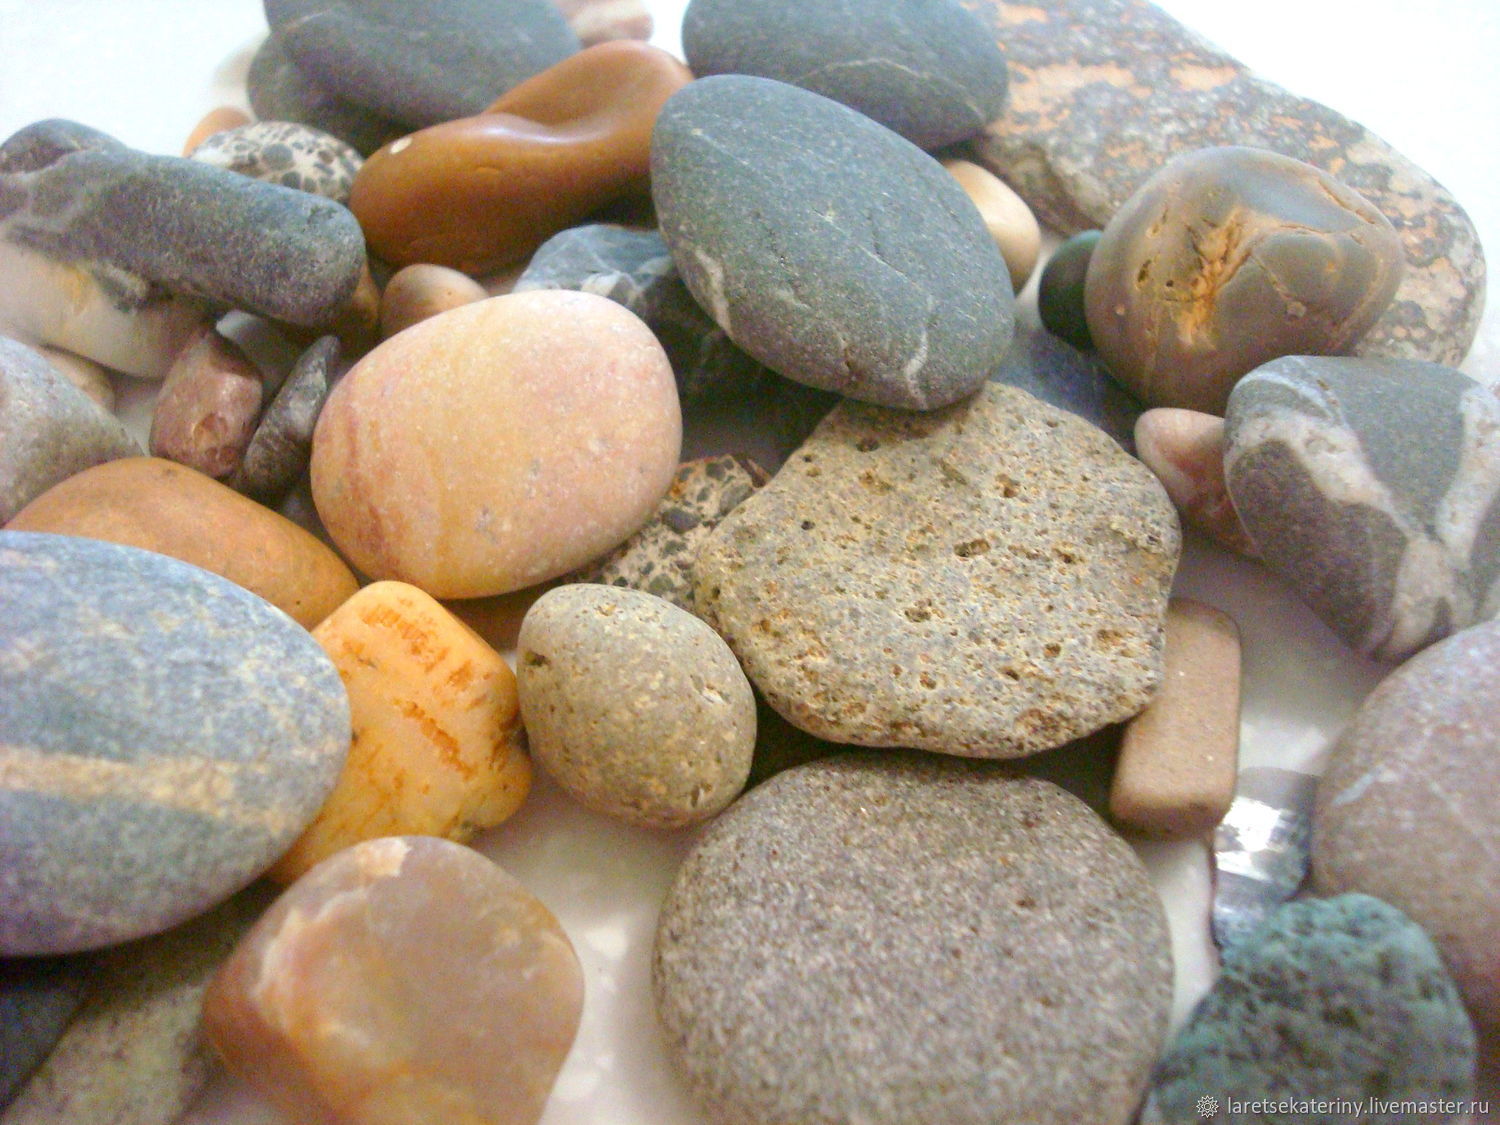 Купить камни геншин